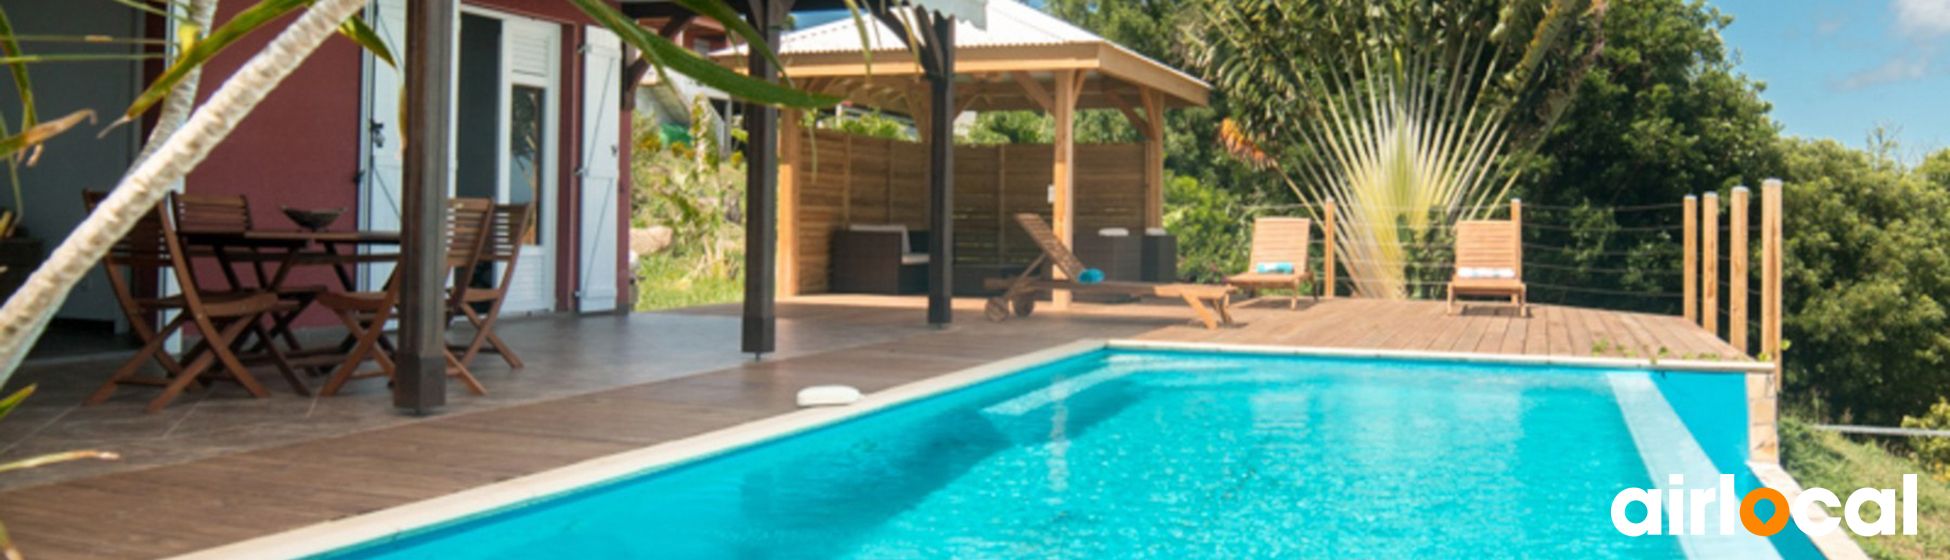 Maison de vacances avec piscine martinique